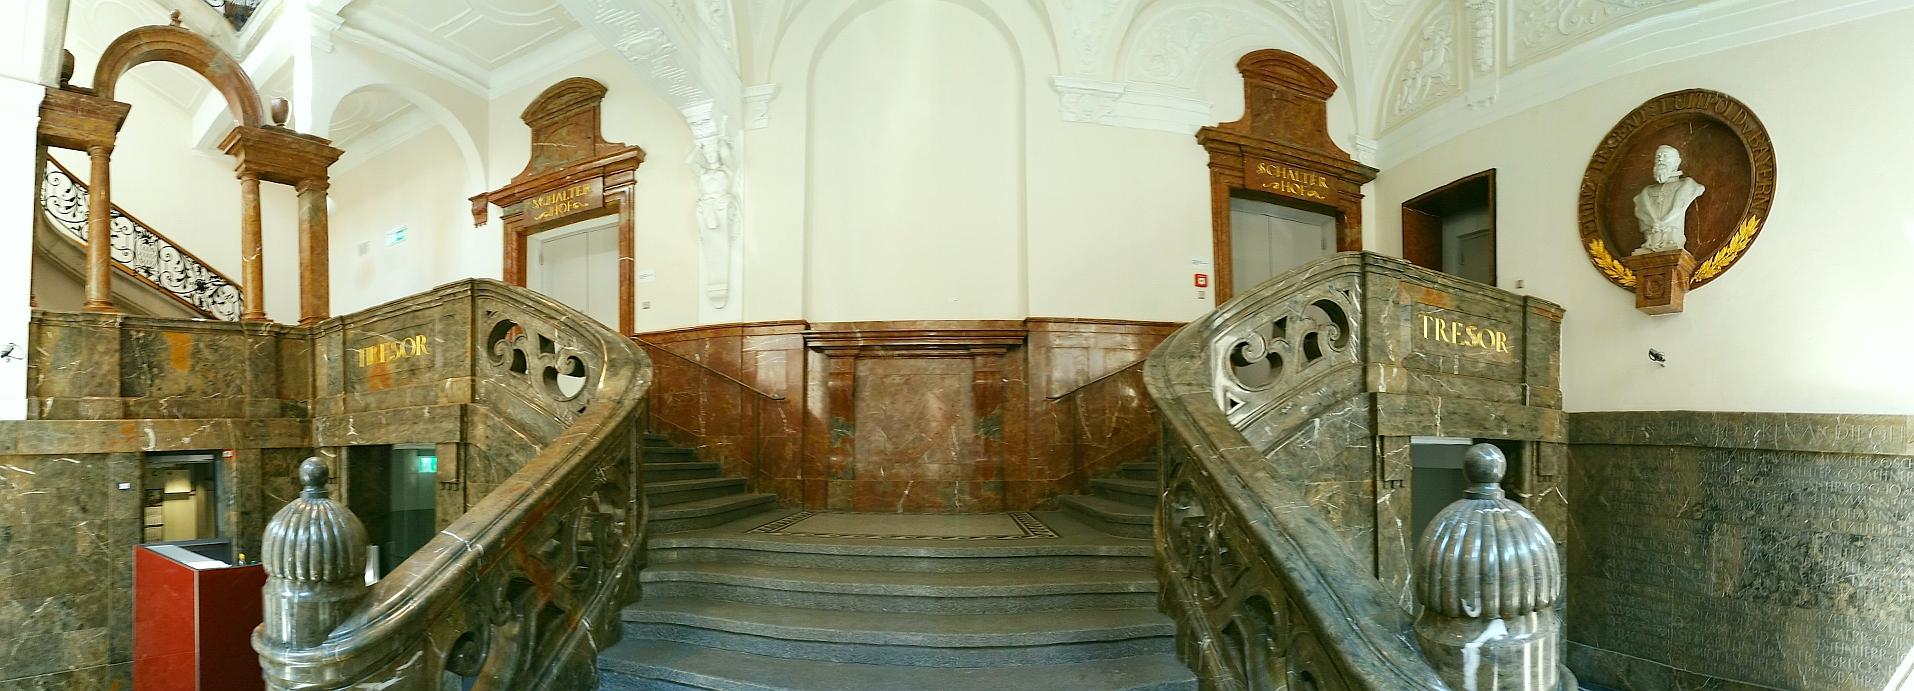 Treppenauf einer Bank aus der Zeit um 1900 in der Münchner Altstadt